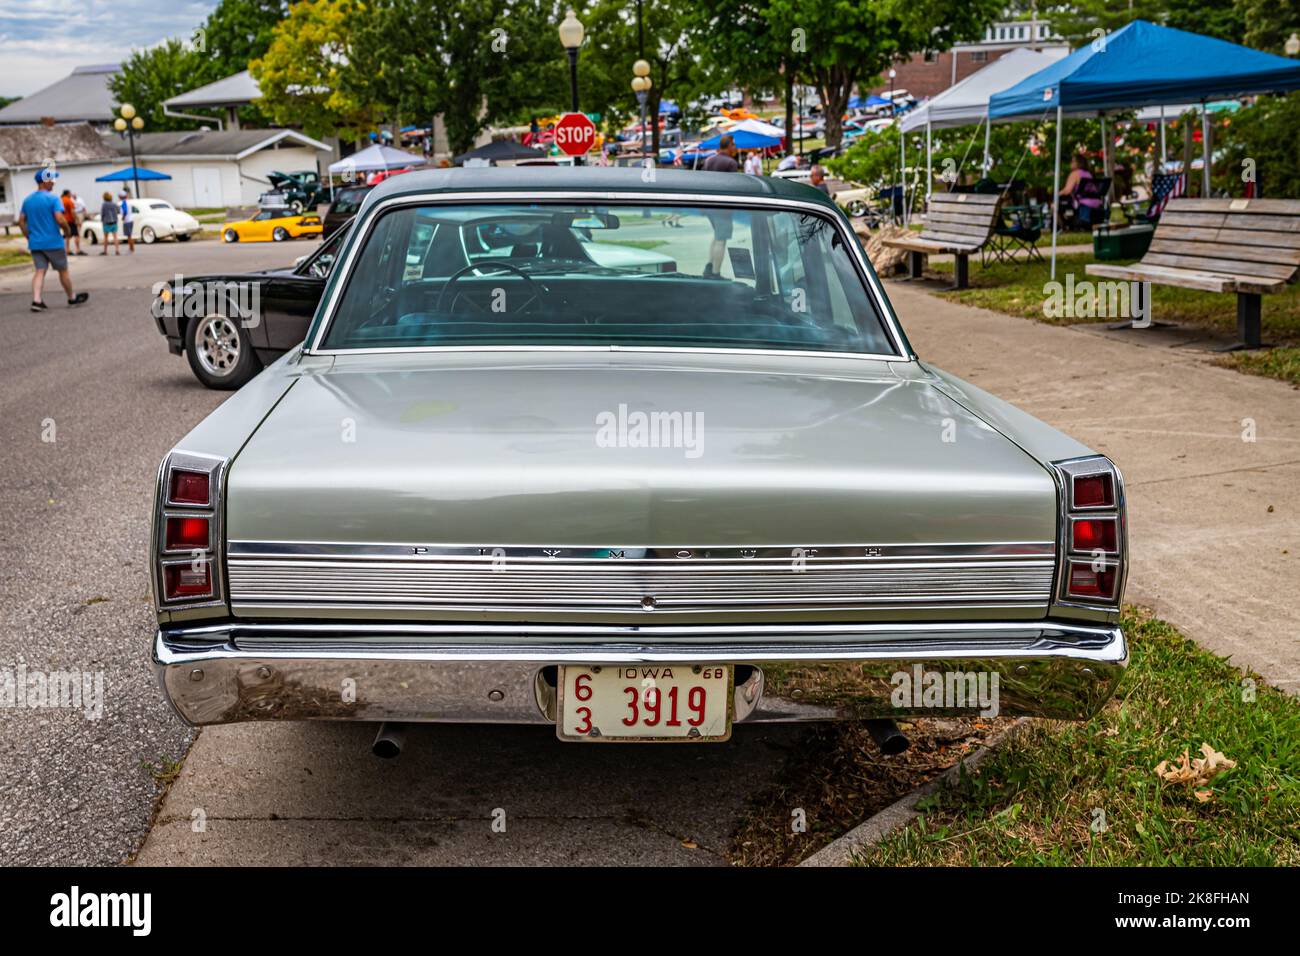 Des Moines, IA - 01 luglio 2022: Vista posteriore in prospettiva alta di una berlina 2 porte Plymouth Valiant Signet 1968 in un salone automobilistico locale. Foto Stock